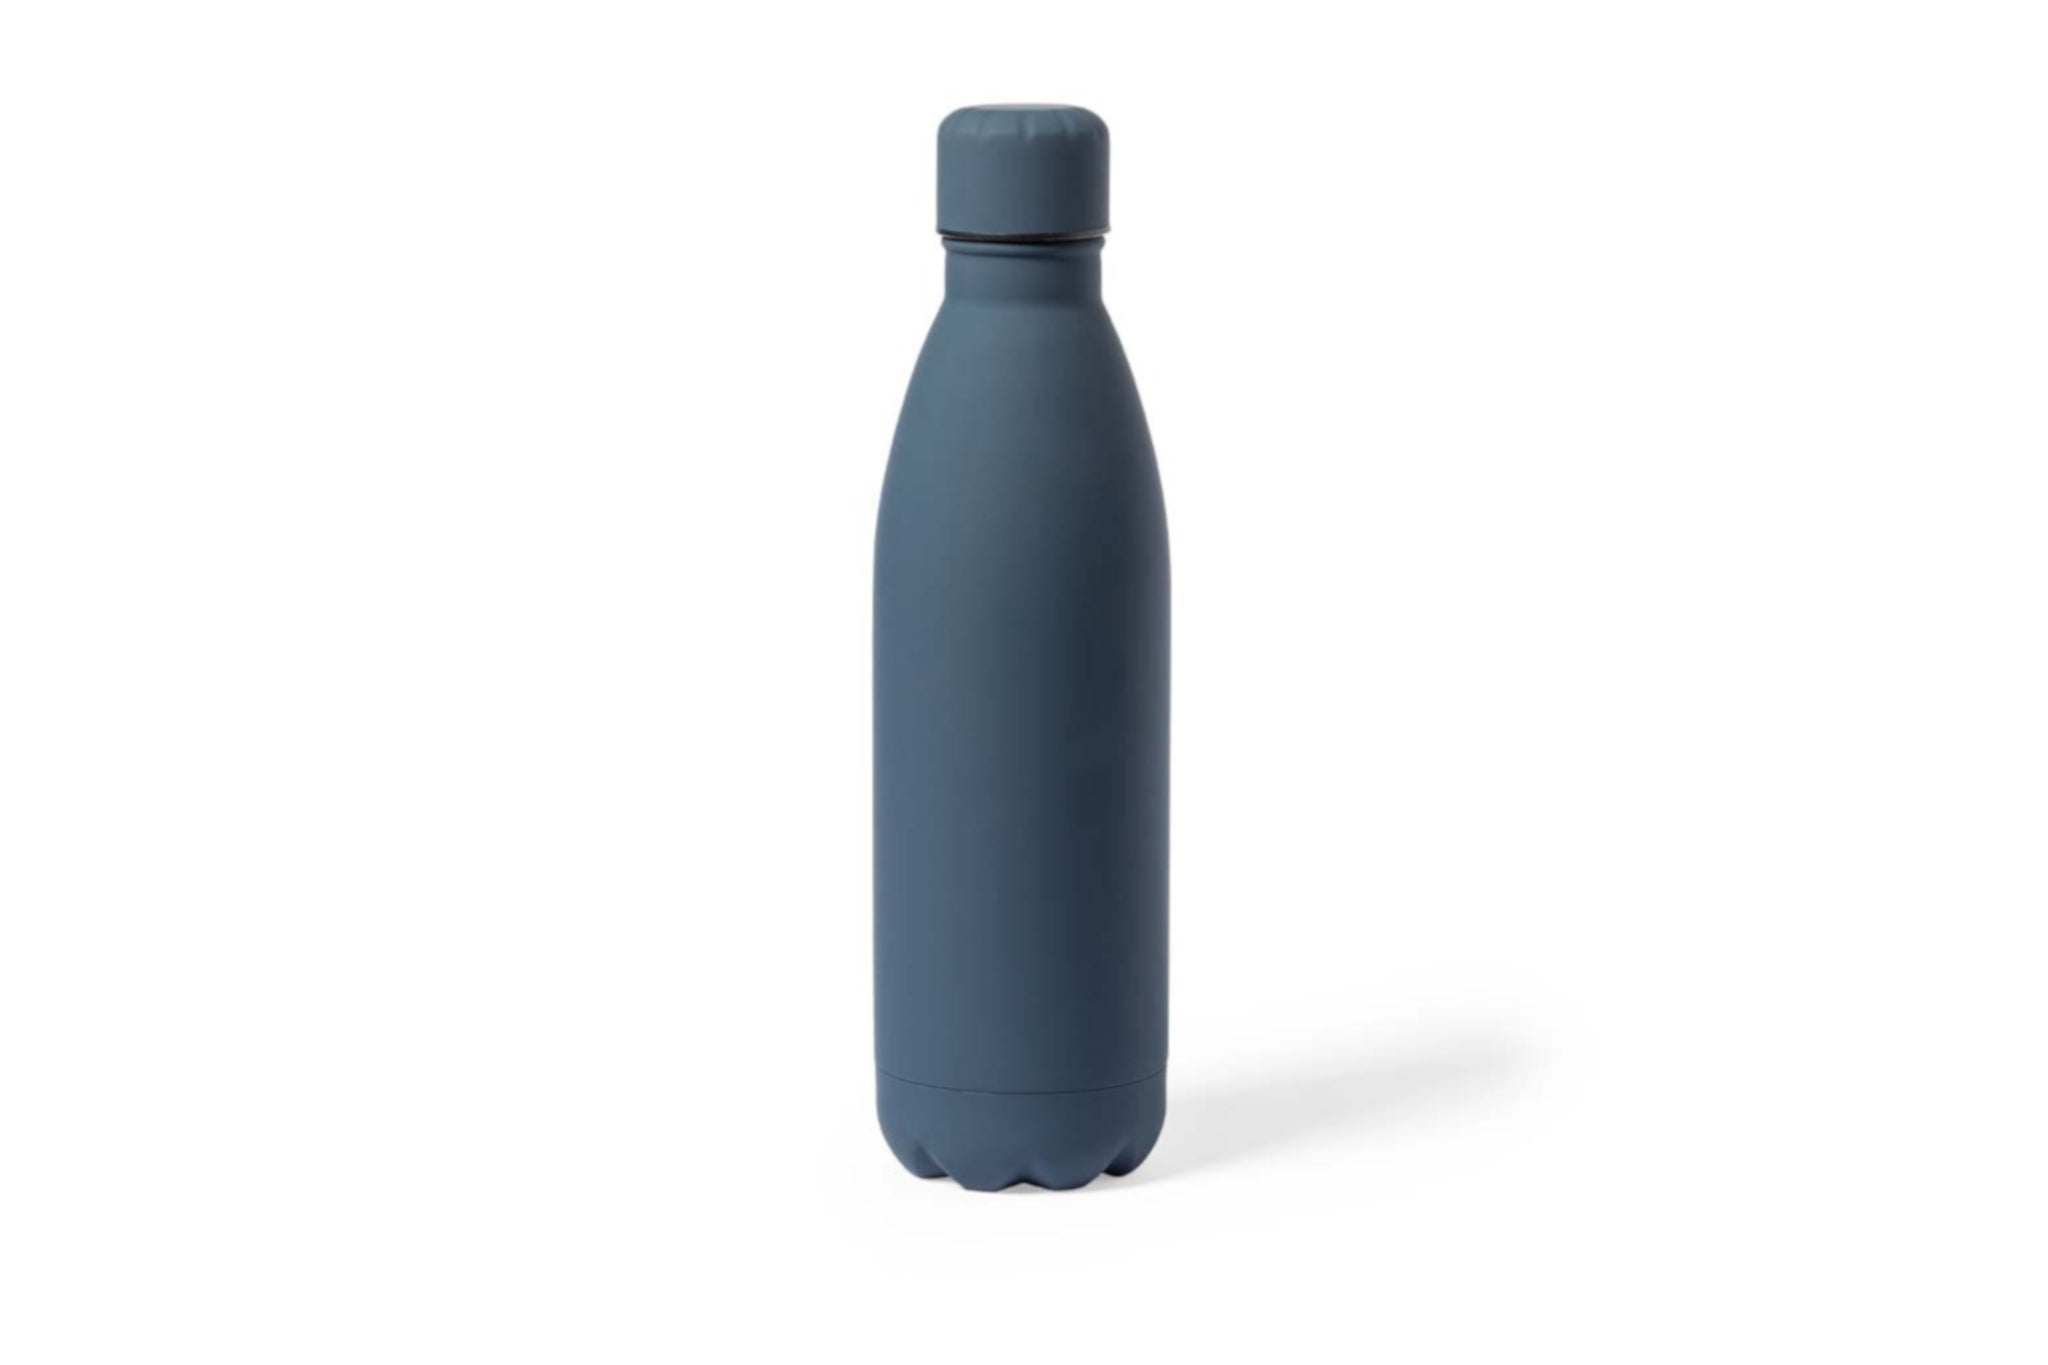 Metalen drinkfles, onbreekbare waterfles, aluminium drinkfles, hydratatiefles, fles van RVS, roesvrijstalen watercontainer met water quotes, kleur blauw.